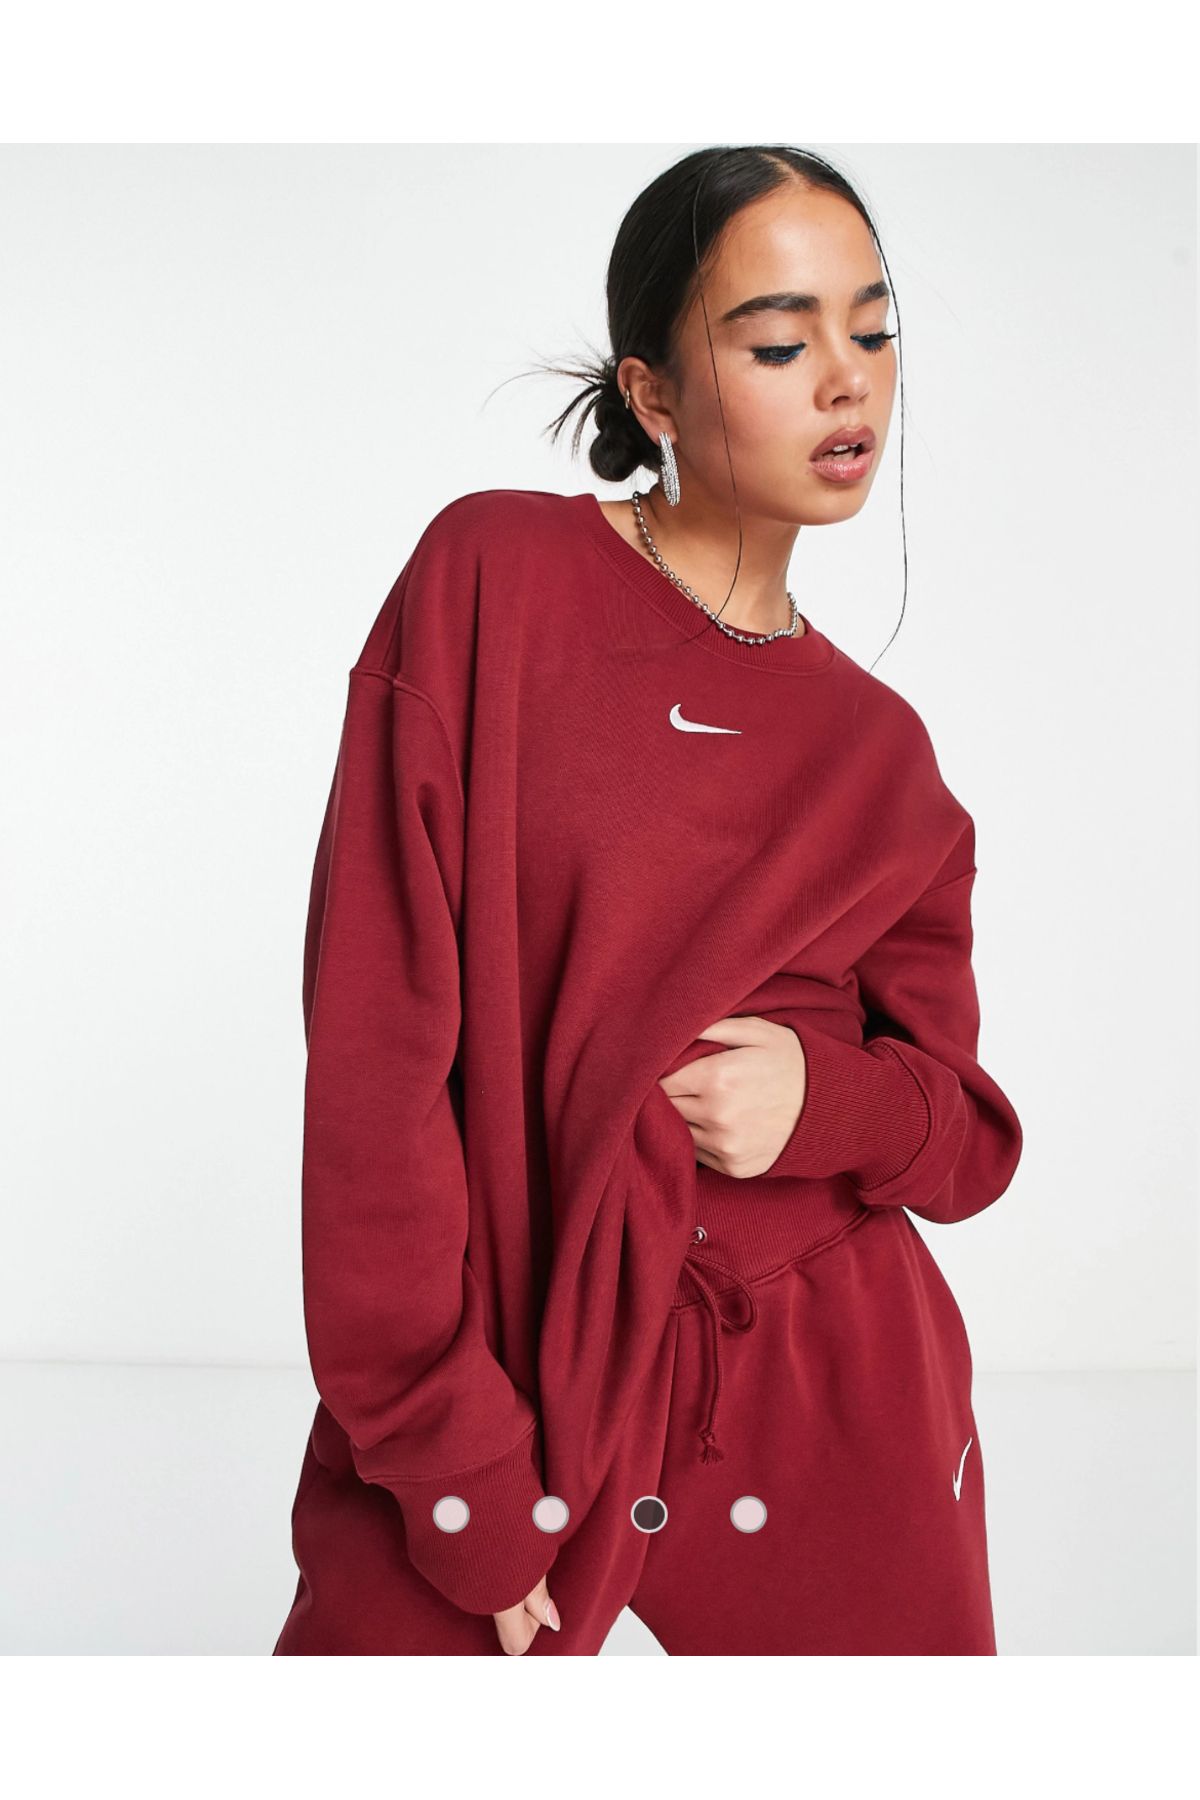 Nike Sportswear Phoenix Brushed Fleece Oversized Crew Neck Kadın Sweatshirt CNG-STORE